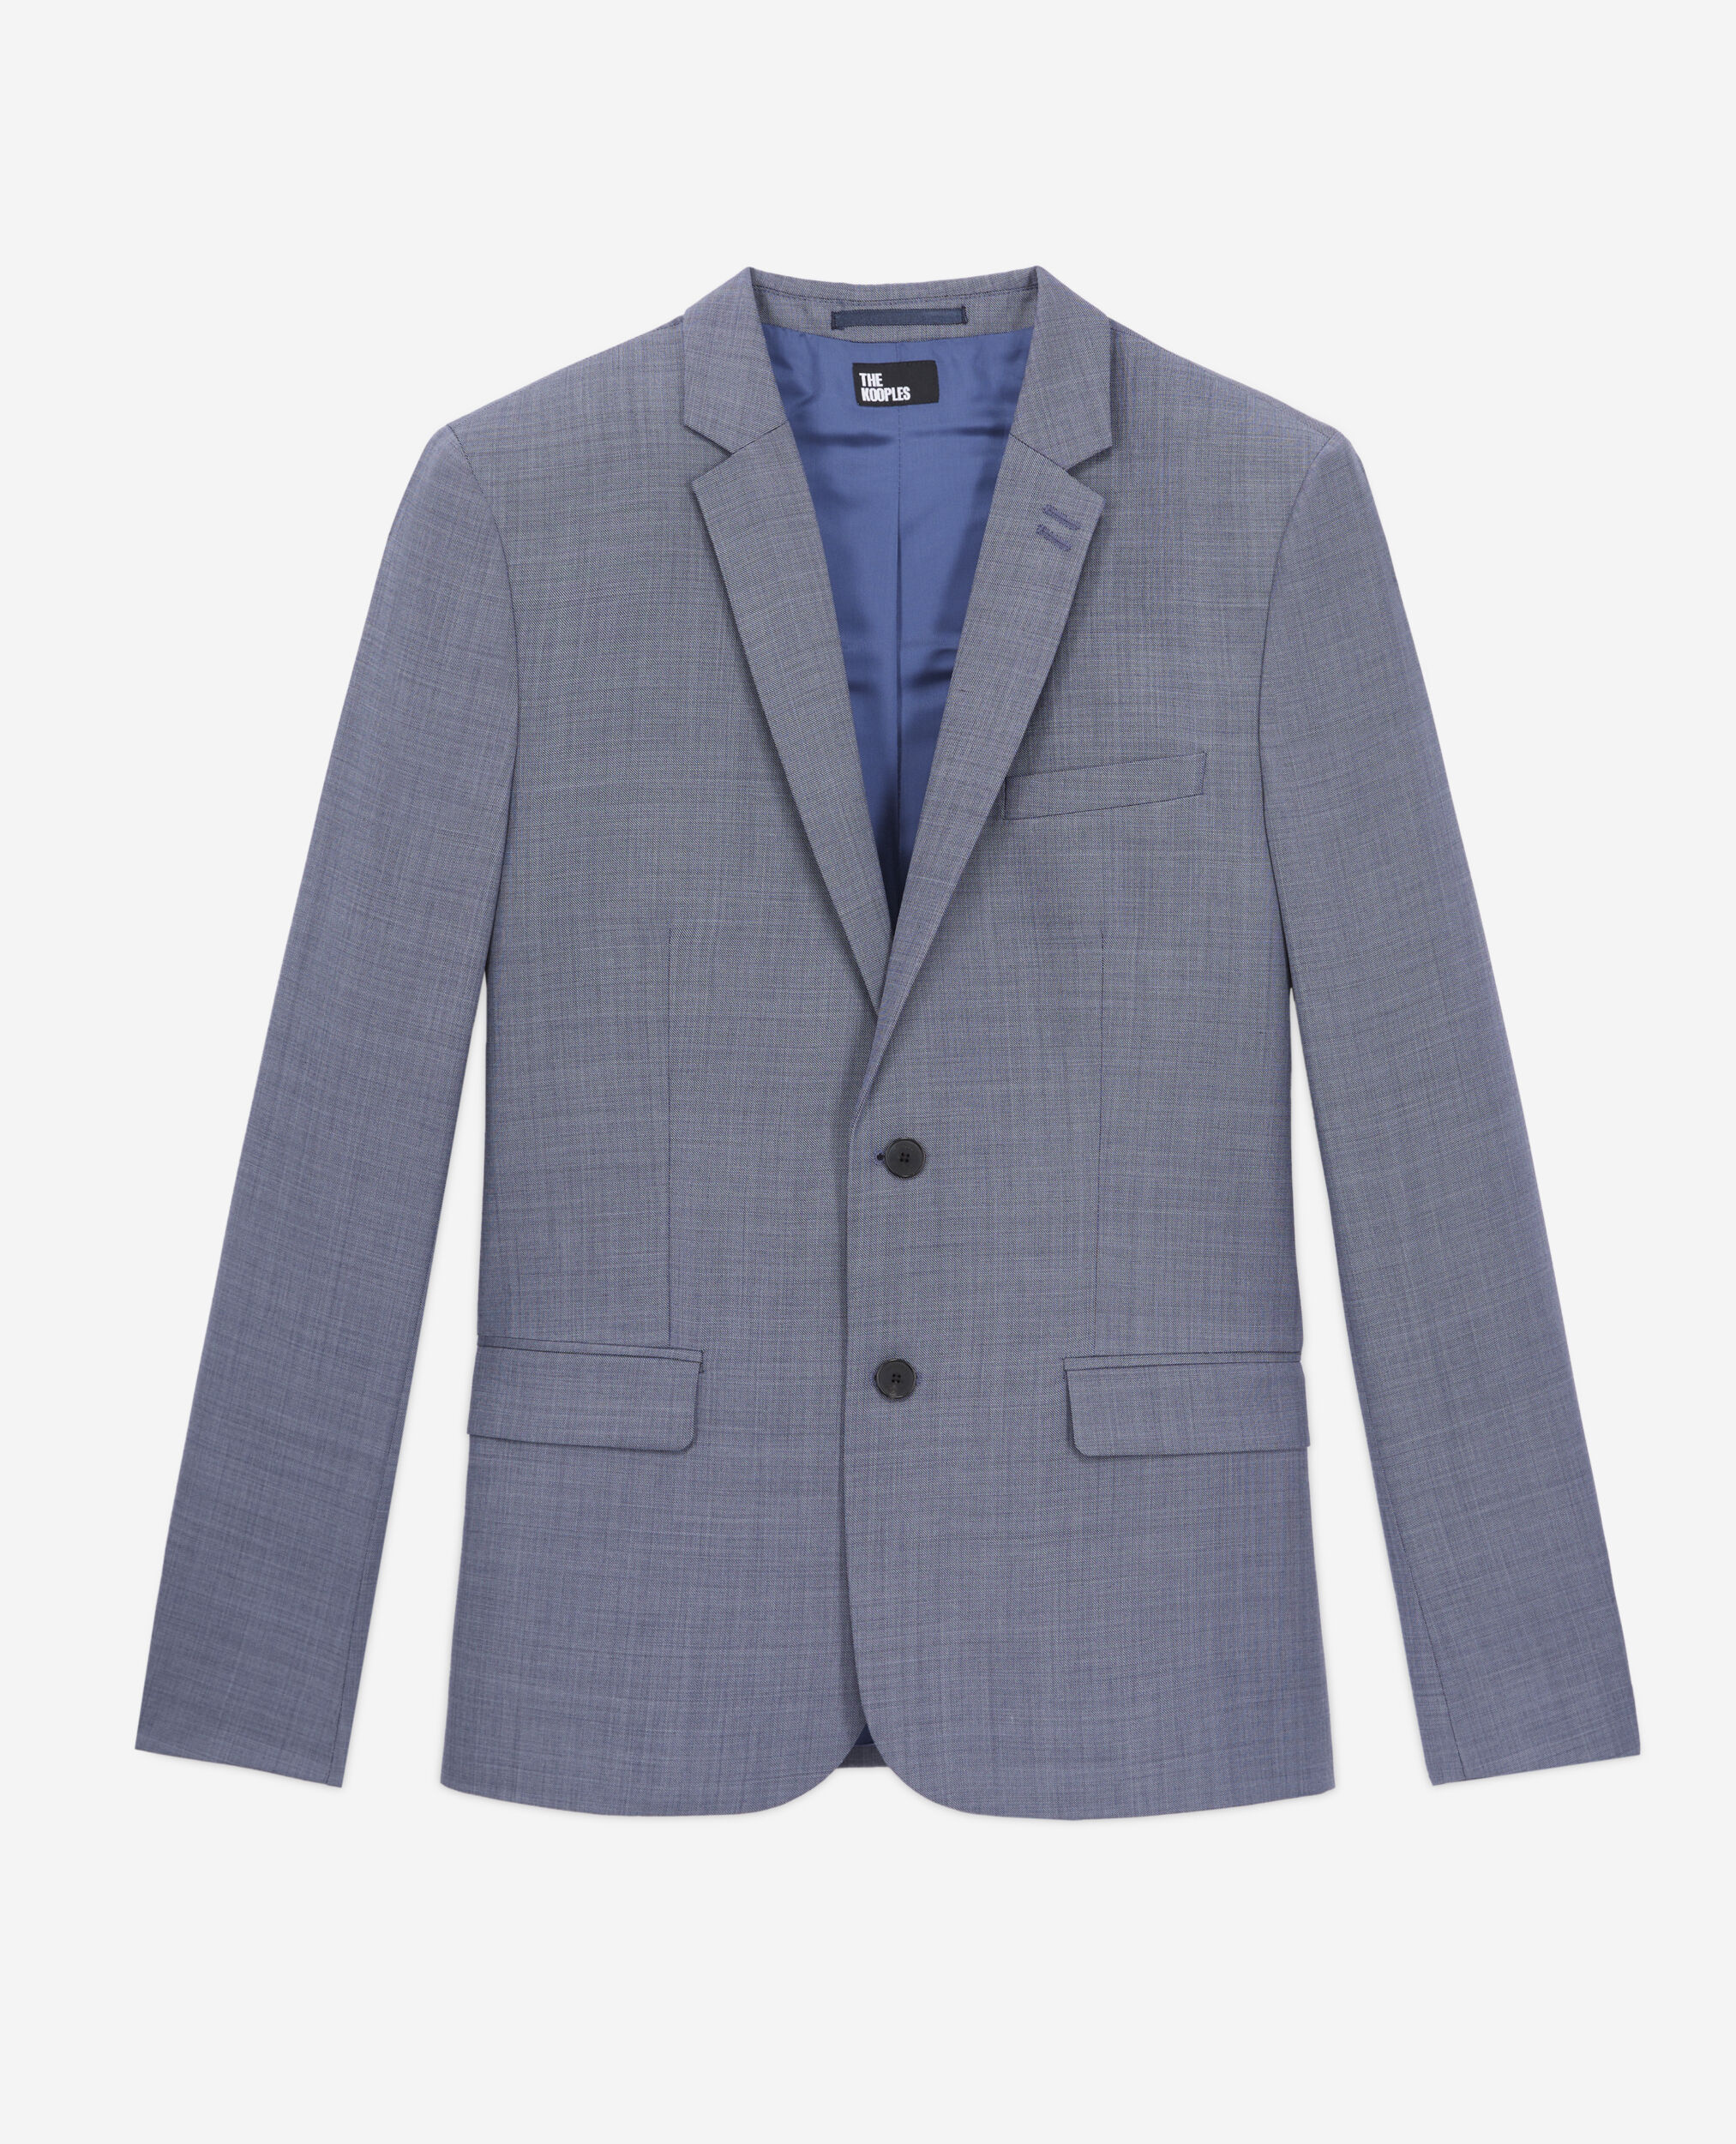 Veste de costume en laine à carreaux gris et bleus, LIGHT BLUE, hi-res image number null